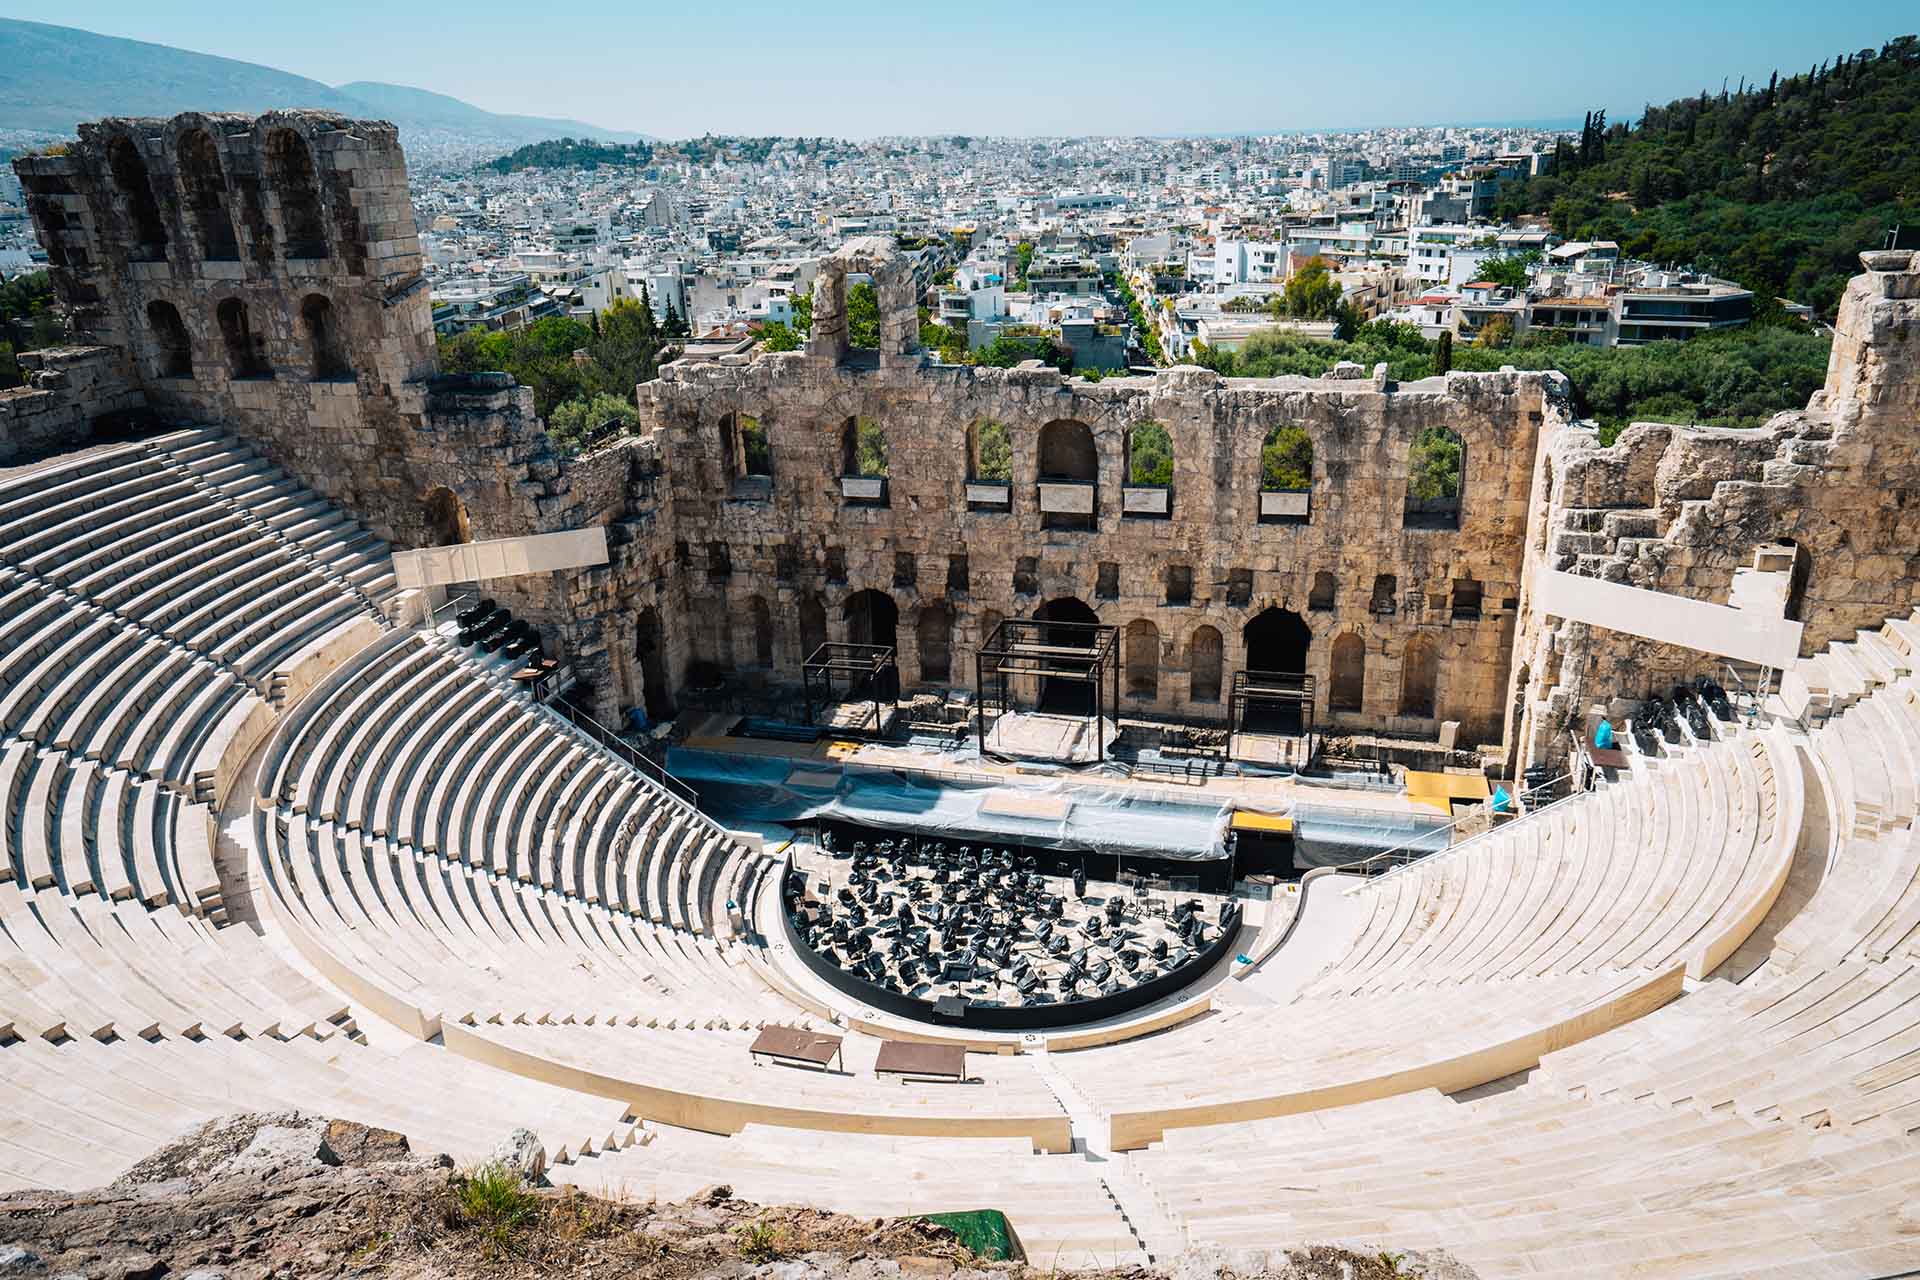 het oude Romeinse theater van Athene van bovenaf gezien